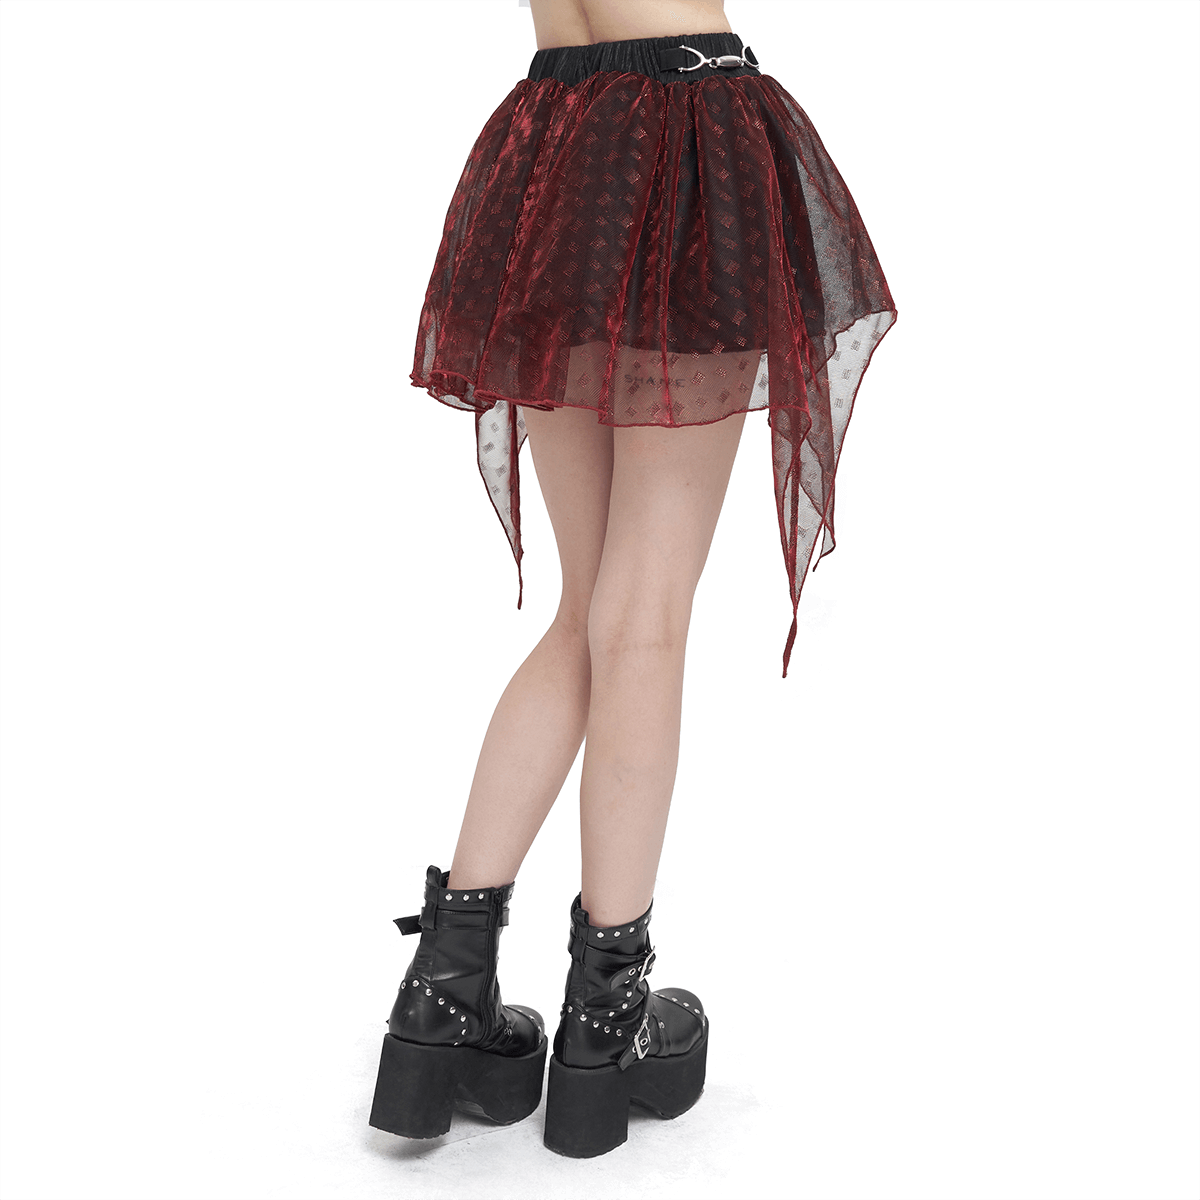 Female Wine Red Irregular Layered Mesh Skirt / Grunge Style Short Skirt with Elastic Waistband